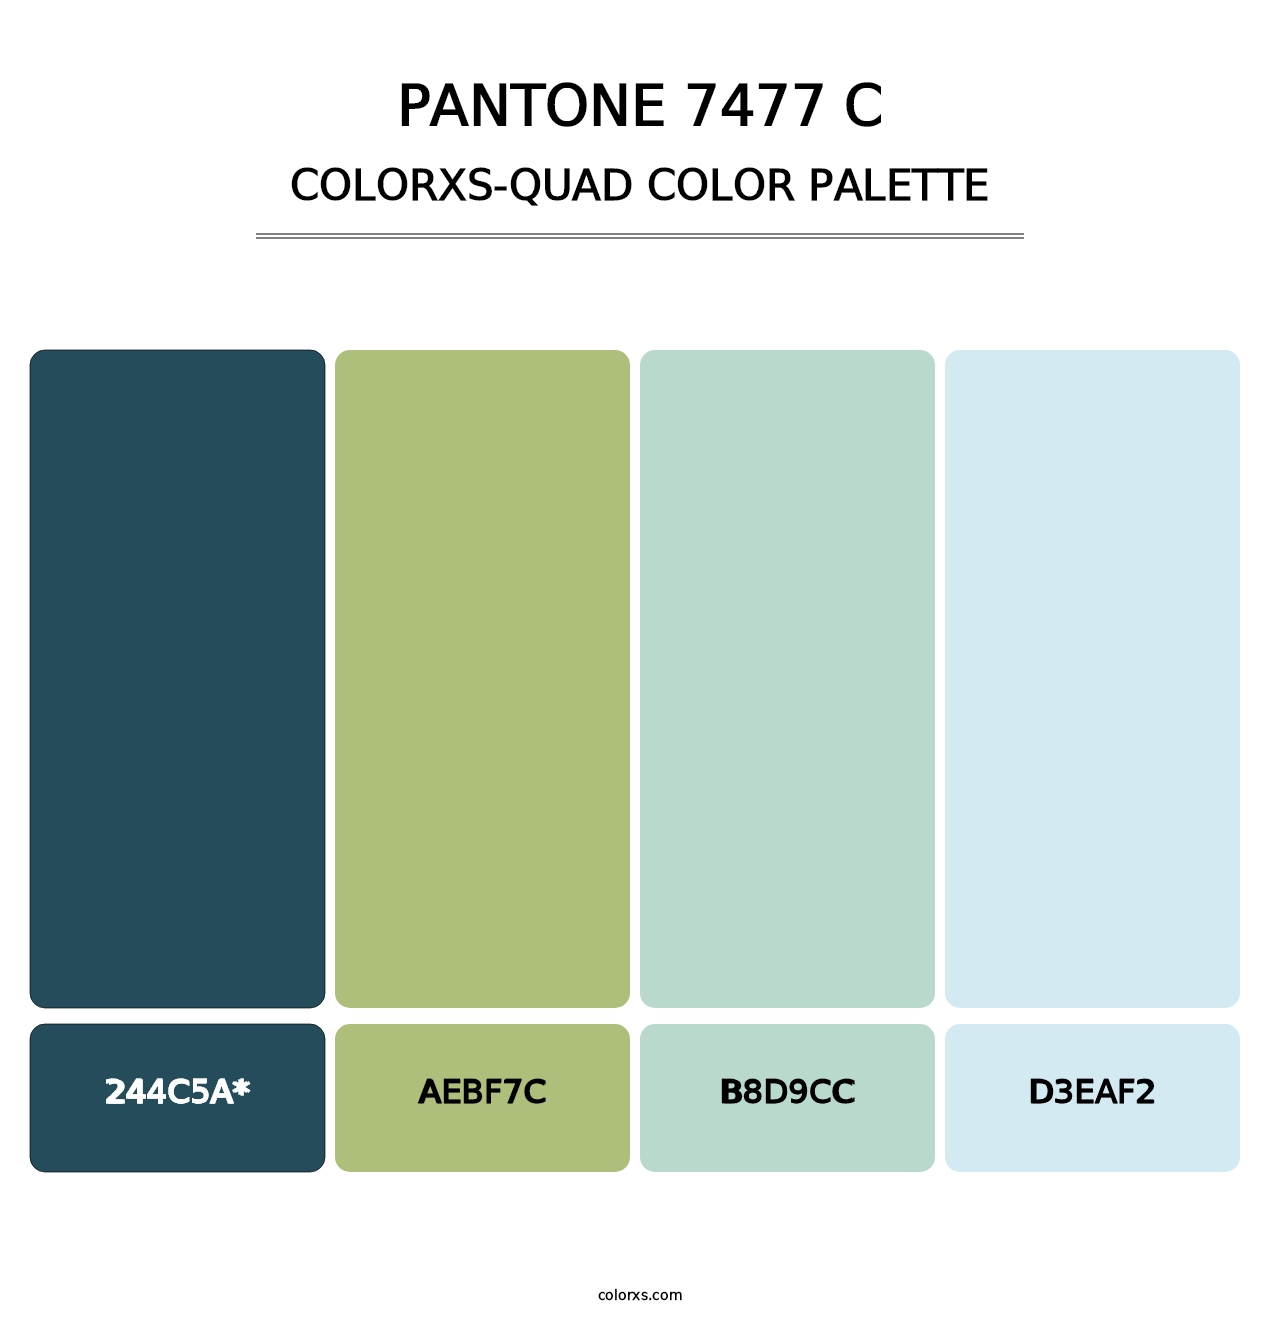 PANTONE 7477 C - Colorxs Quad Palette